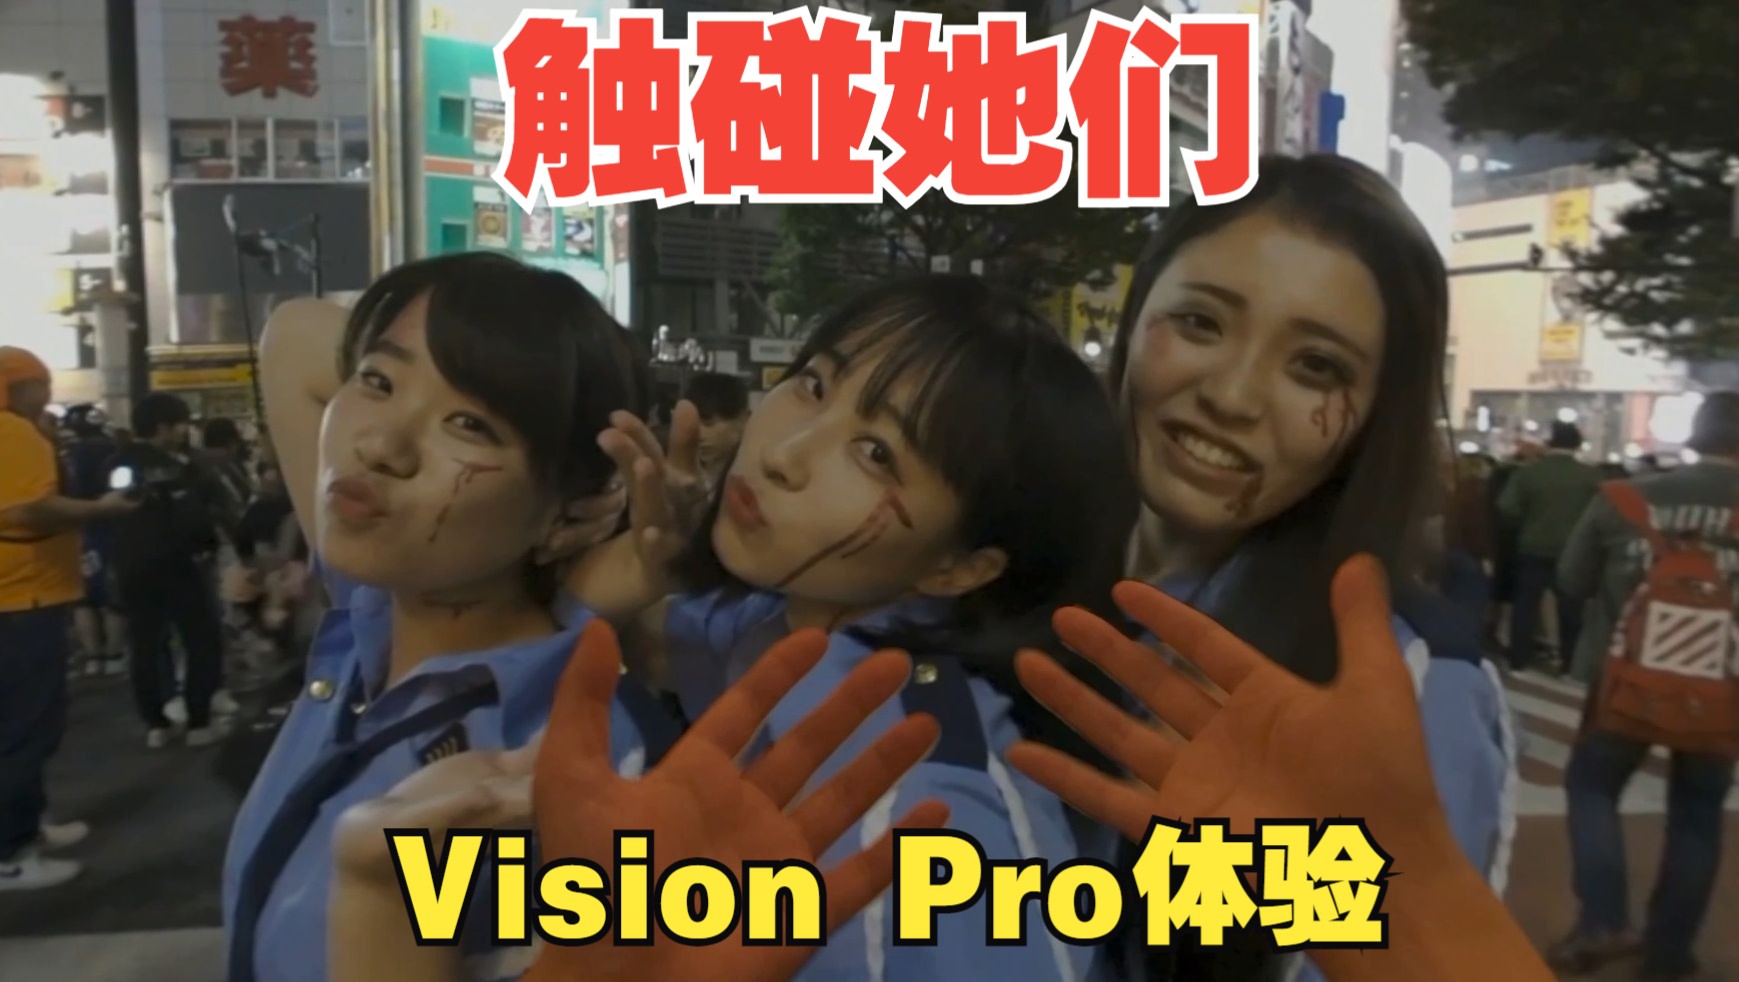 在Vision Pro中触碰她们：超越现实的接触